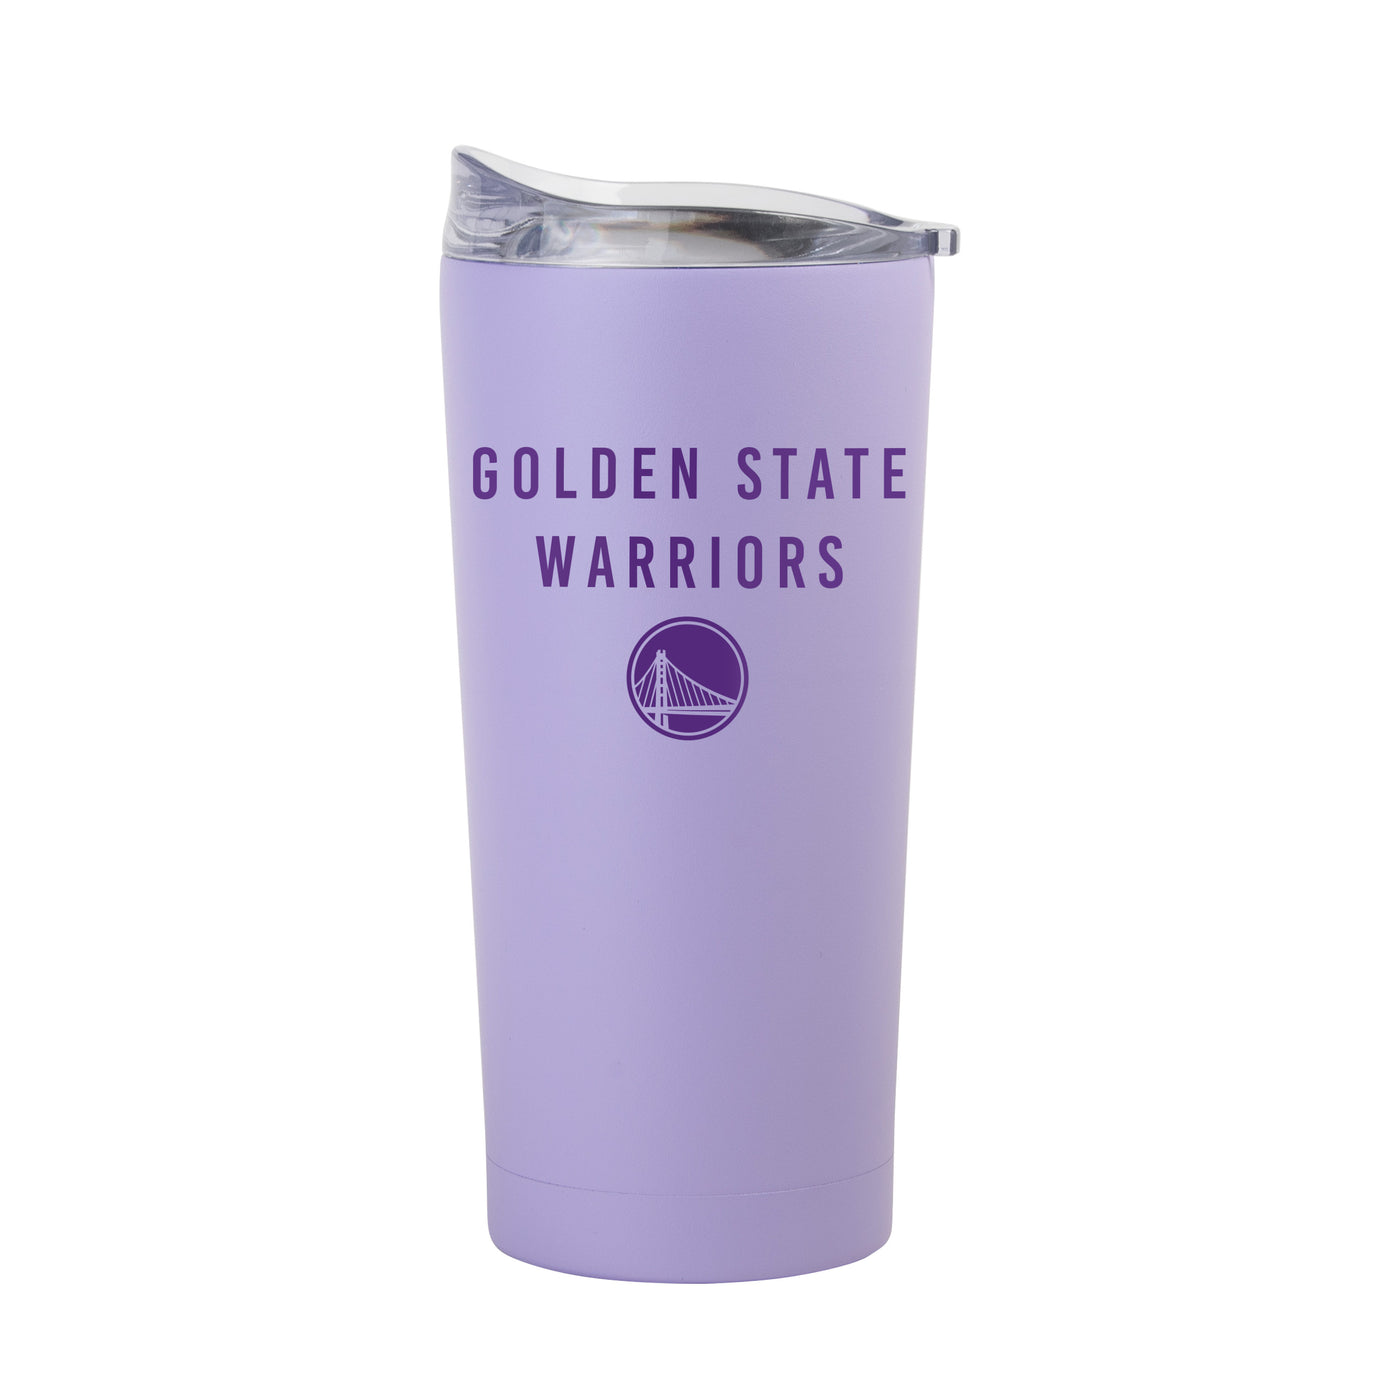 Golden State Warriors 20oz Tonal Lavender Powder Coat Tumbler